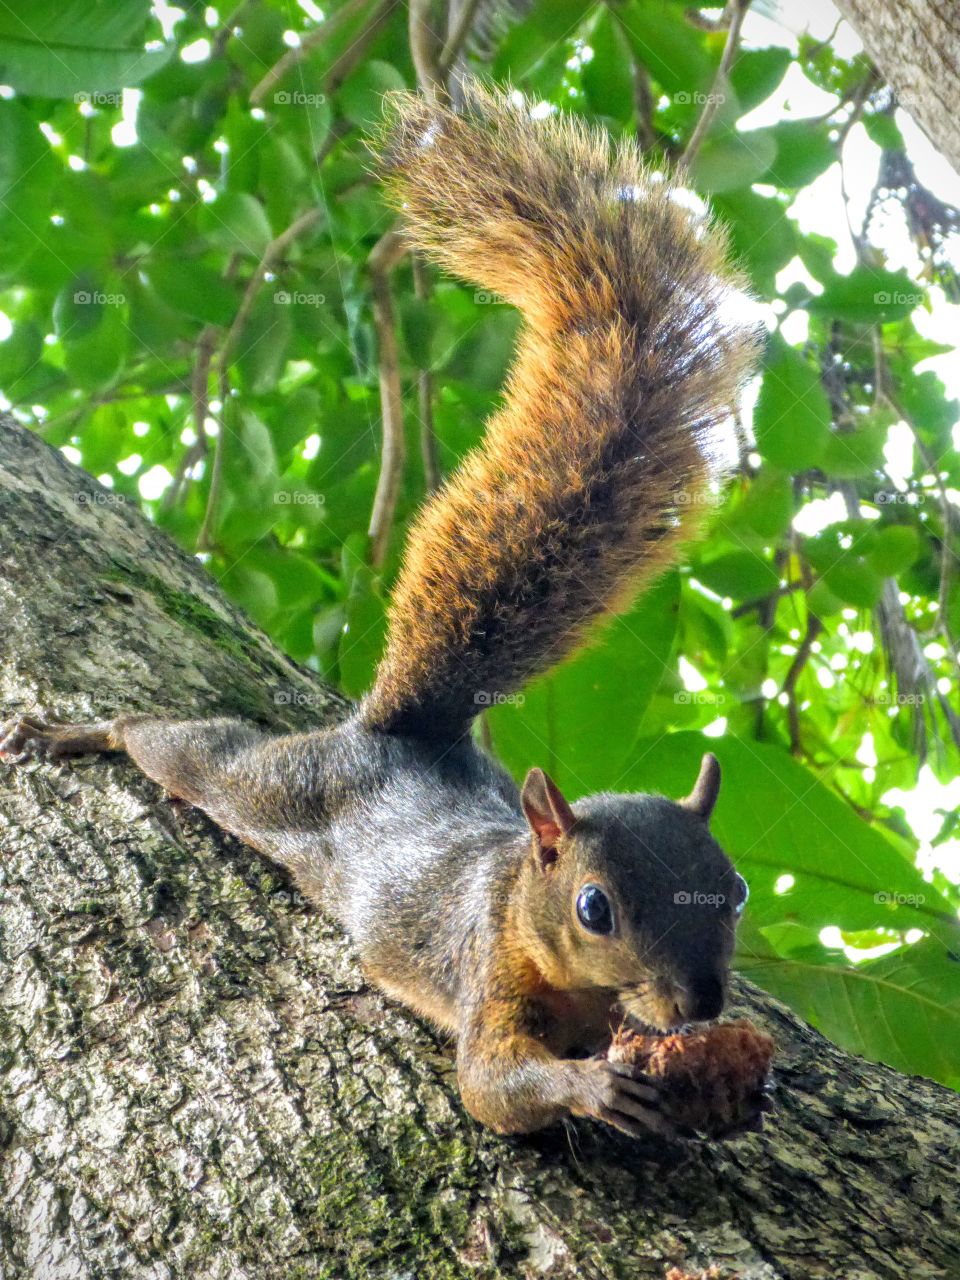 Friendly squirrel, Cahuita